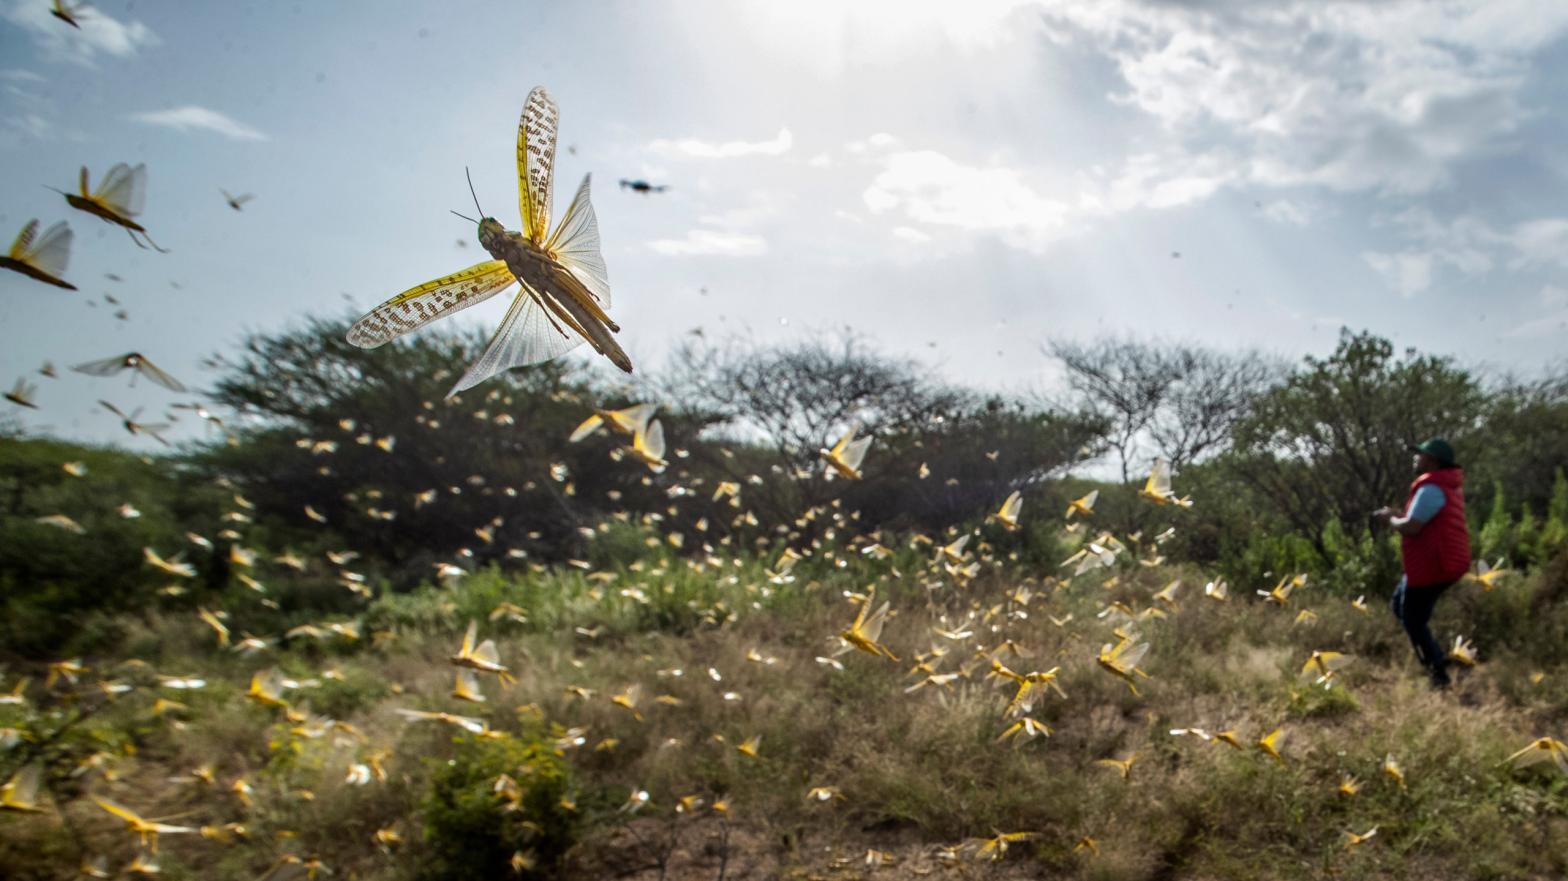 Swarming locusts in Kenya, February 1, 2020.  (Image: Ben Curtis, AP)